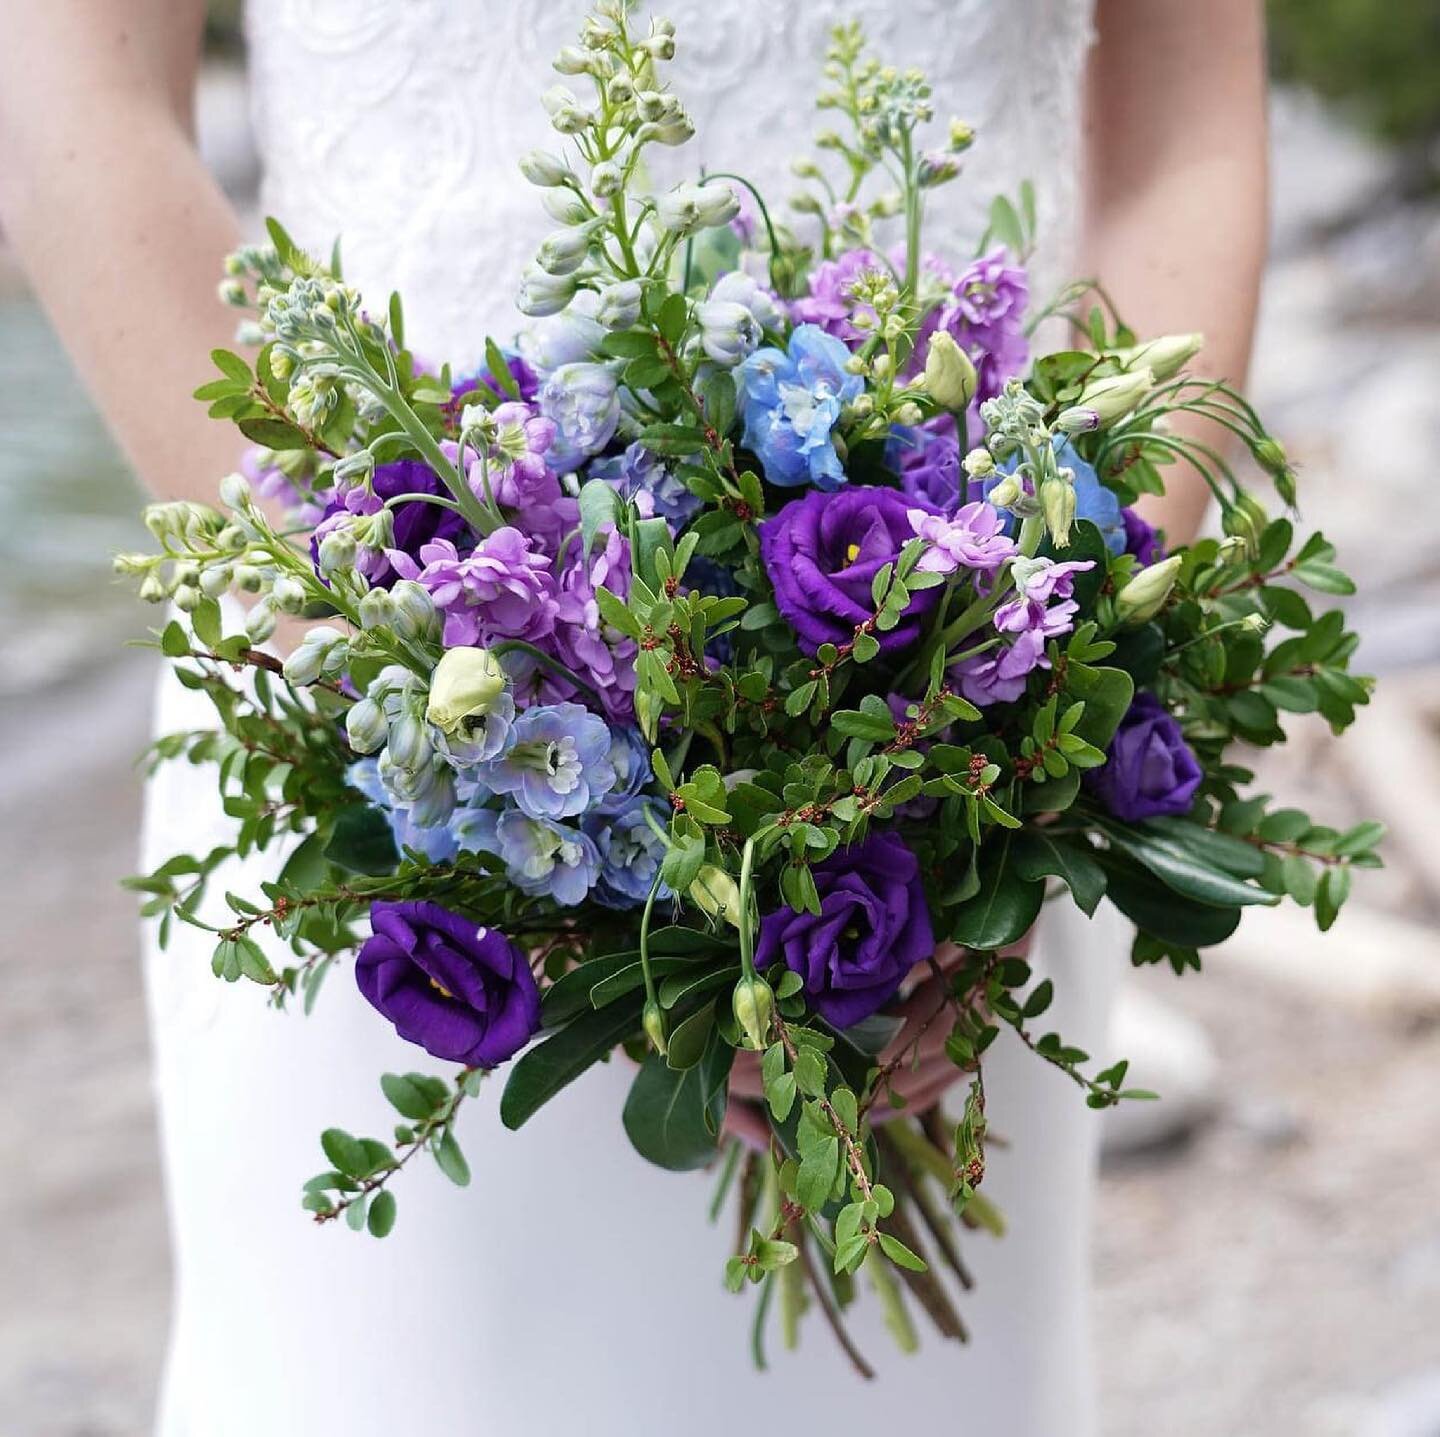 Purple and blue wild beauty! 
.
.
#banff #banffwedding #banffflorist #banffmountaintopflowers #purpleandbluebouquet #handtiedbouquet #elopeinbanff #flowershop #banfflocals #banffbride #banffflowers